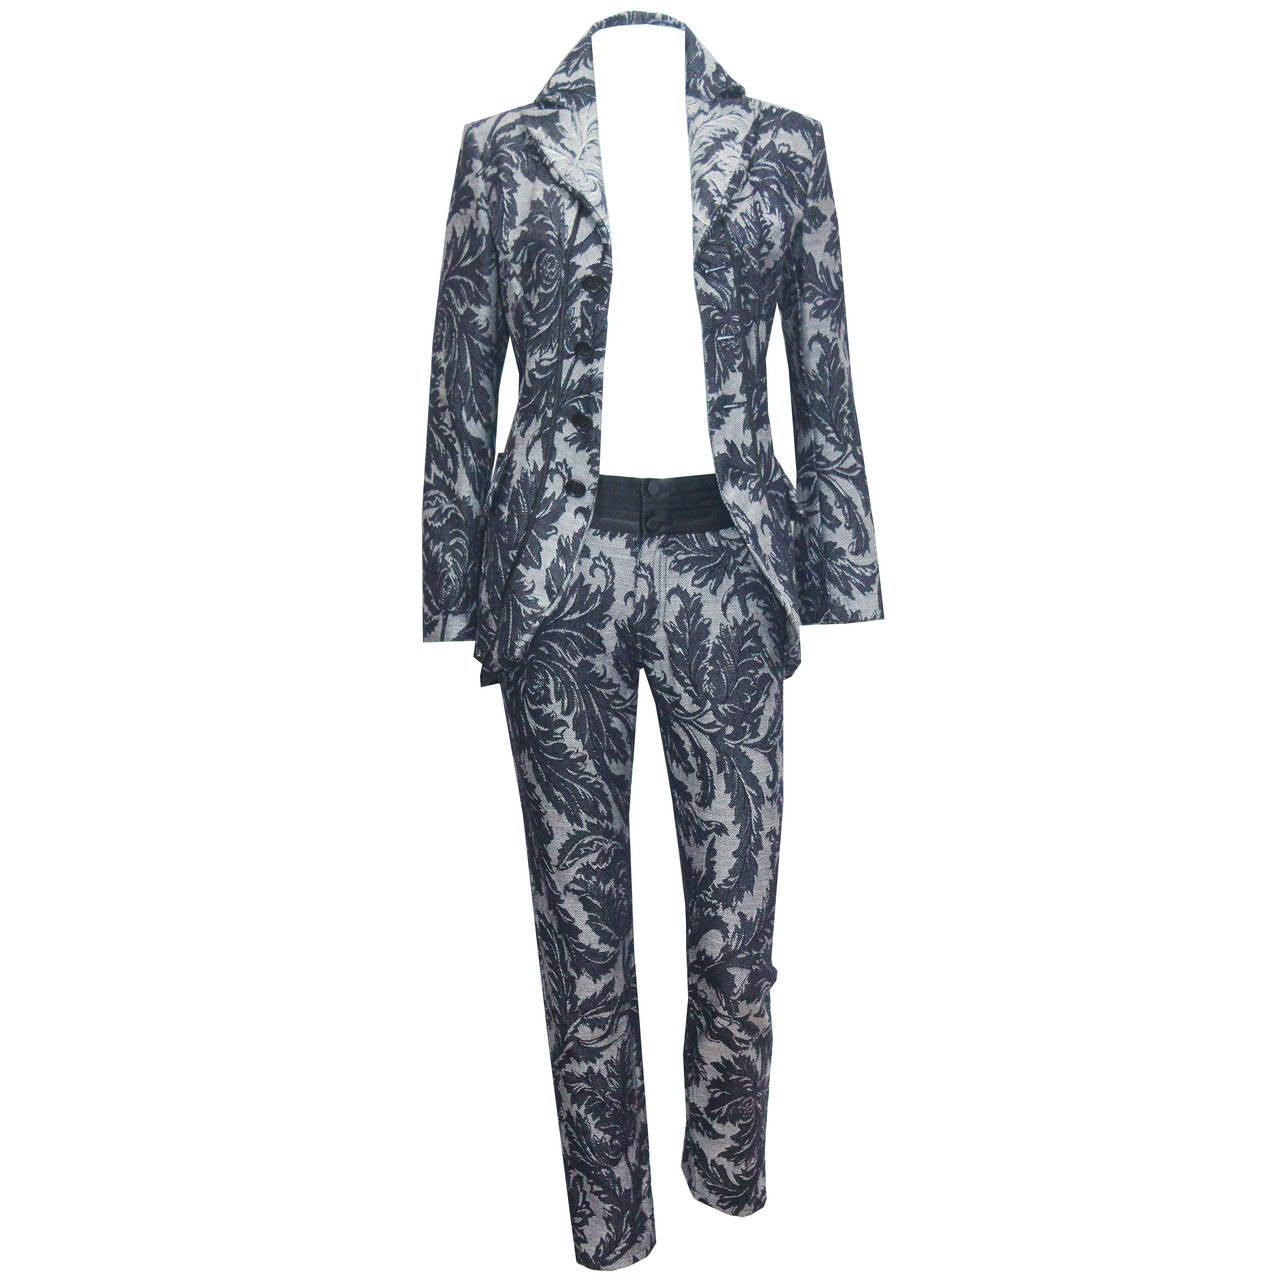 Junya Watanabe for COMME des Garcons denim jacquard pant suit, SS 2007